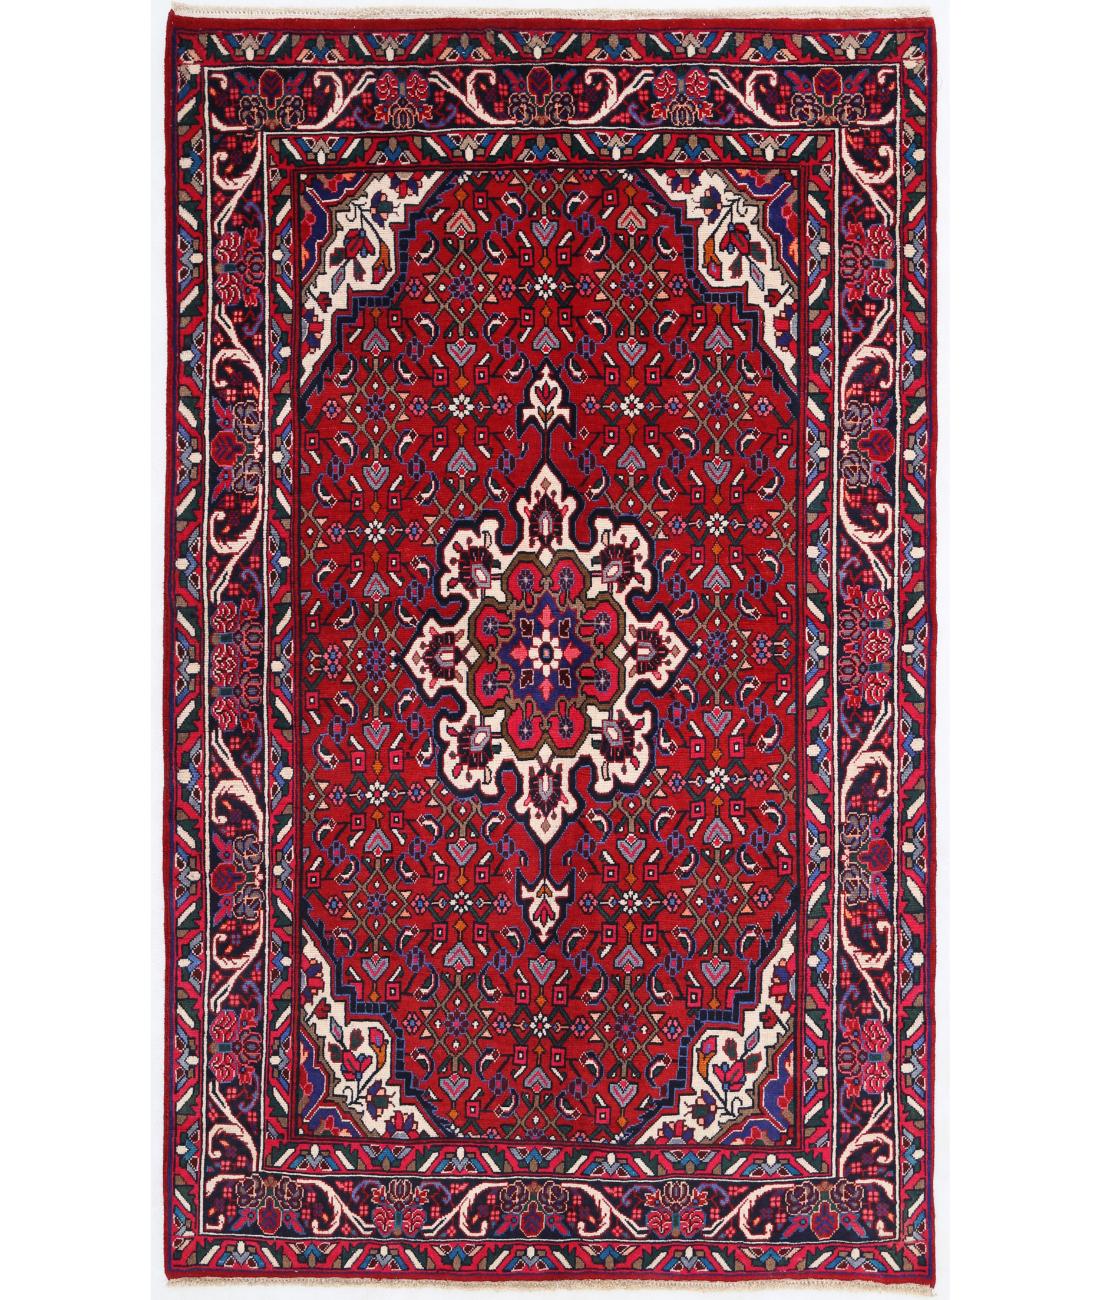 Hand Knotted Persian Bijar Wool Rug - 4'1'' x 6'8'' 4' 1" X 6' 8" ( 124 X 203 ) / Red / Black